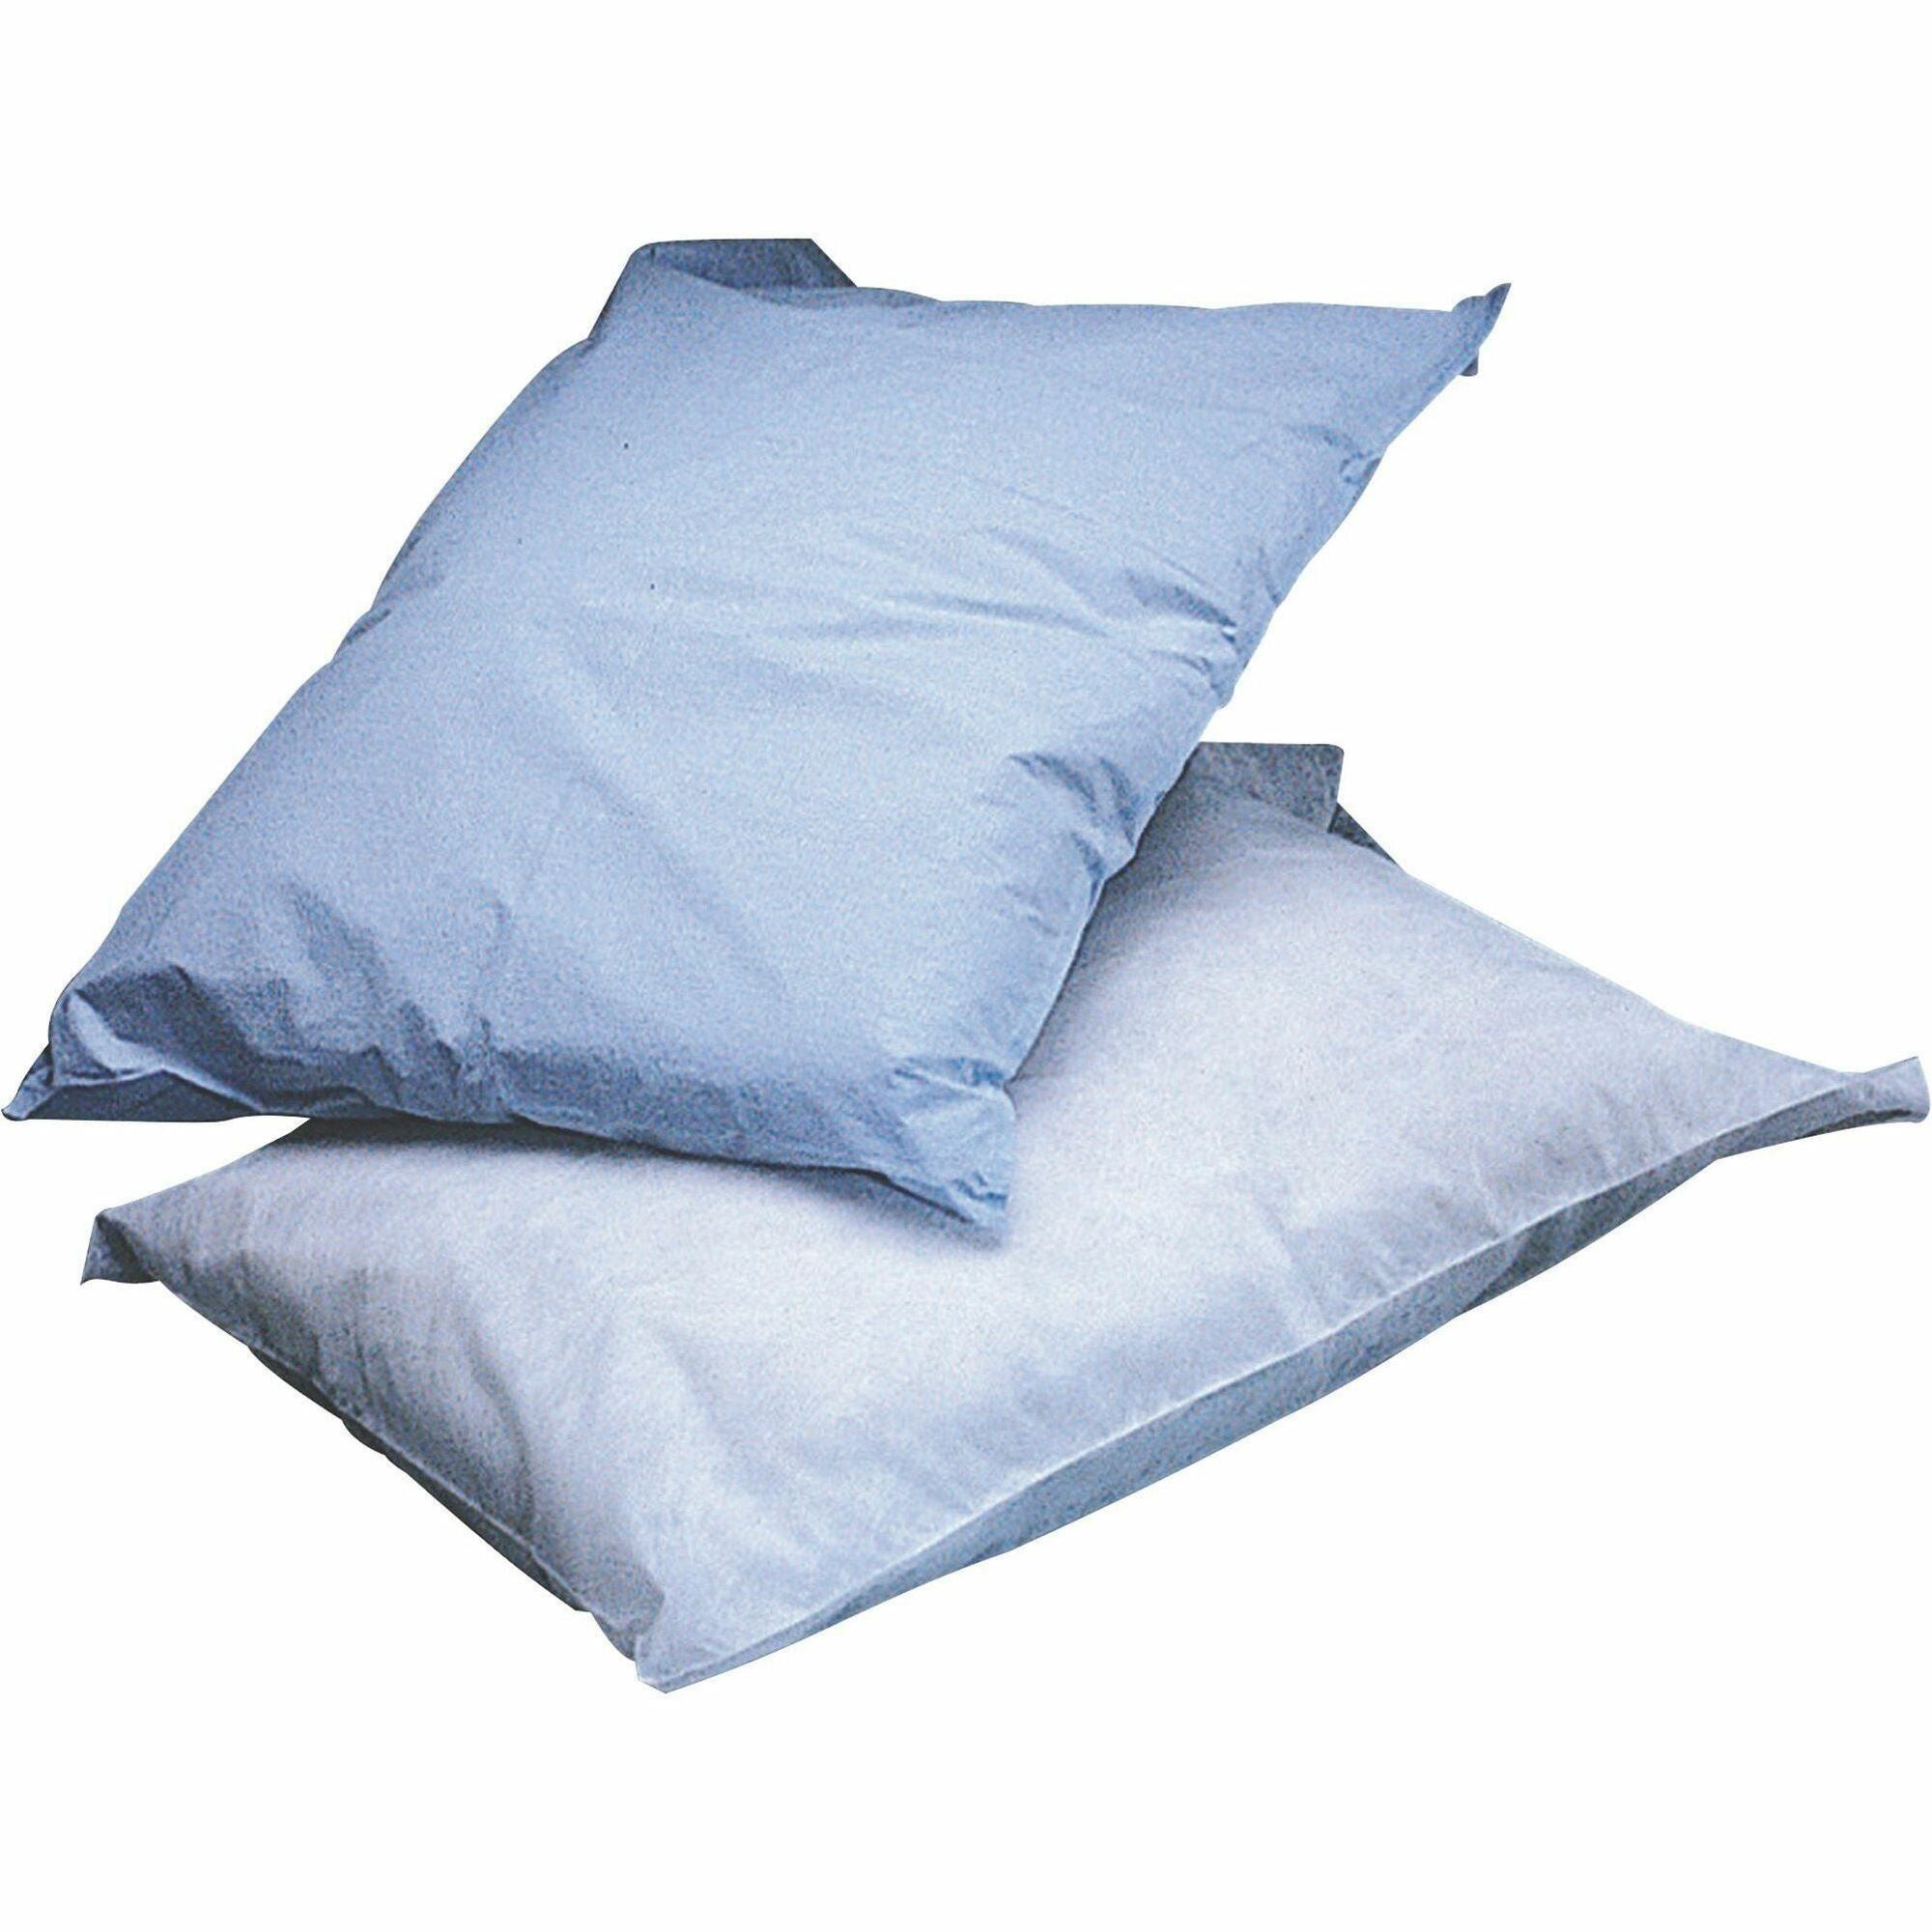 Medline Ultracel Exam Table Pillowcases - 21" x 30" - White - 100 / Box - 